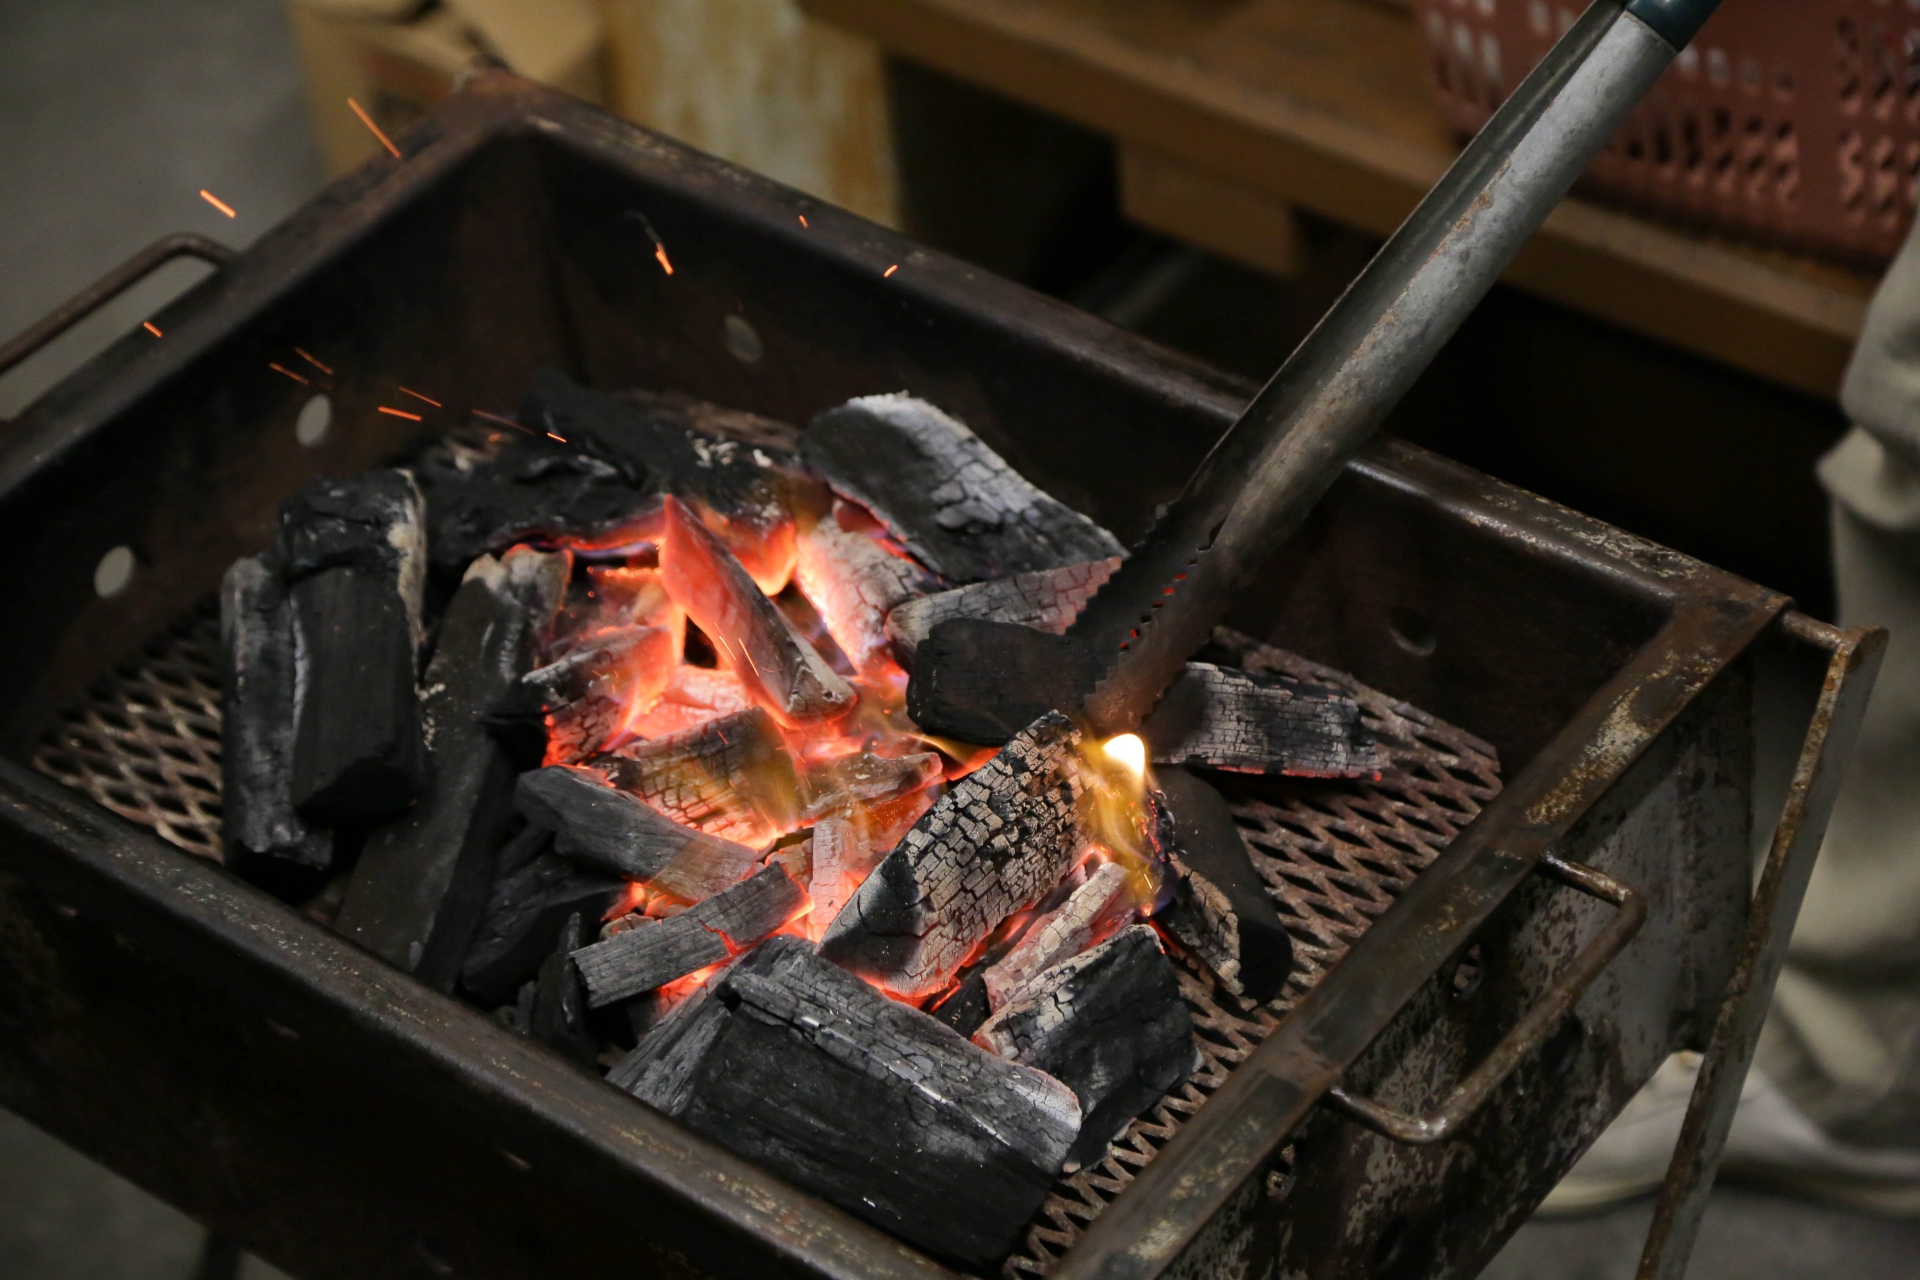 【BBQ】炭起こしにおすすめの炭とやり方まとめ。種類と特徴を把握すればわりとカンタンになります。